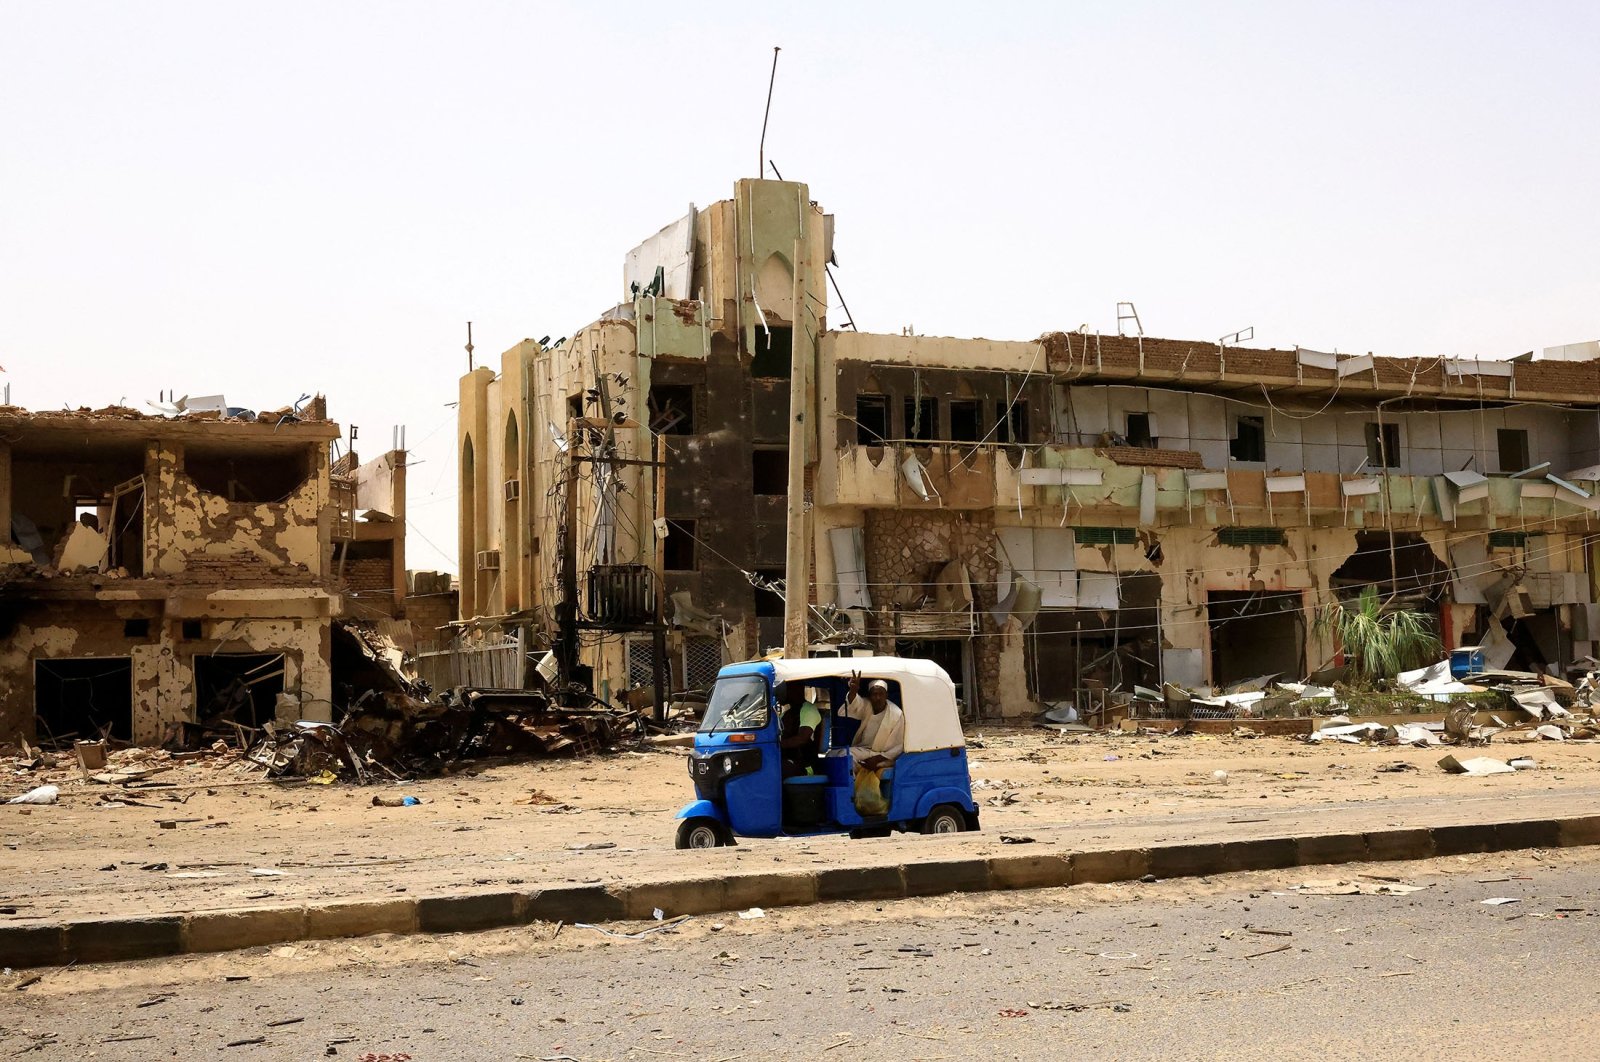 Konflik Sudan memasuki minggu ke-3 seiring gema serangan udara di Khartoum